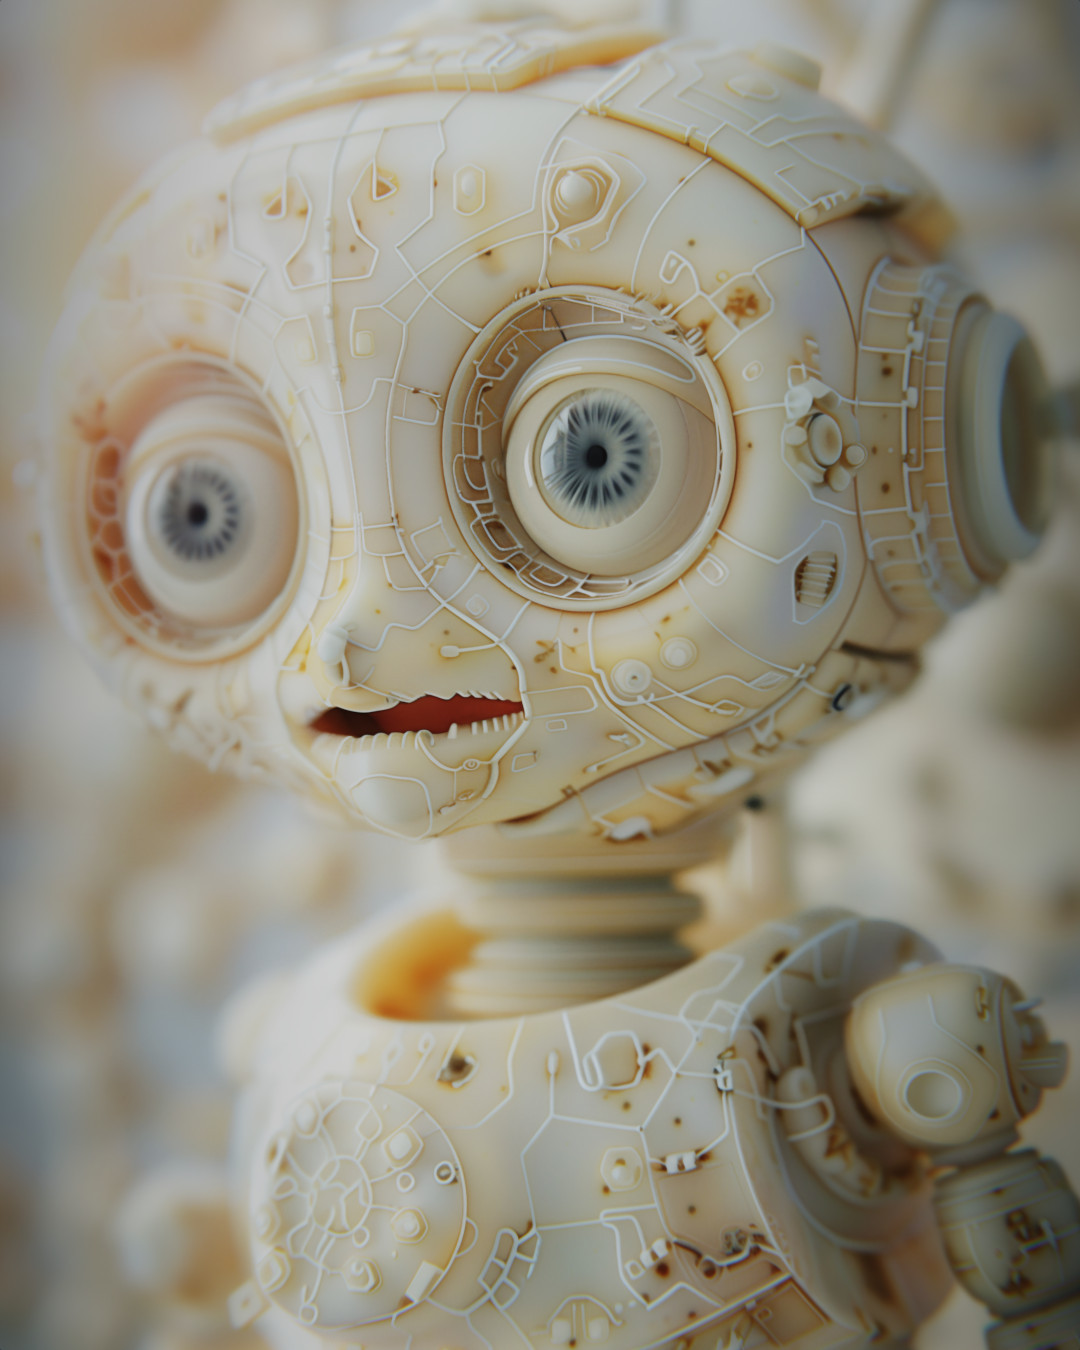 Robot with shiny eyes, light beige and orange